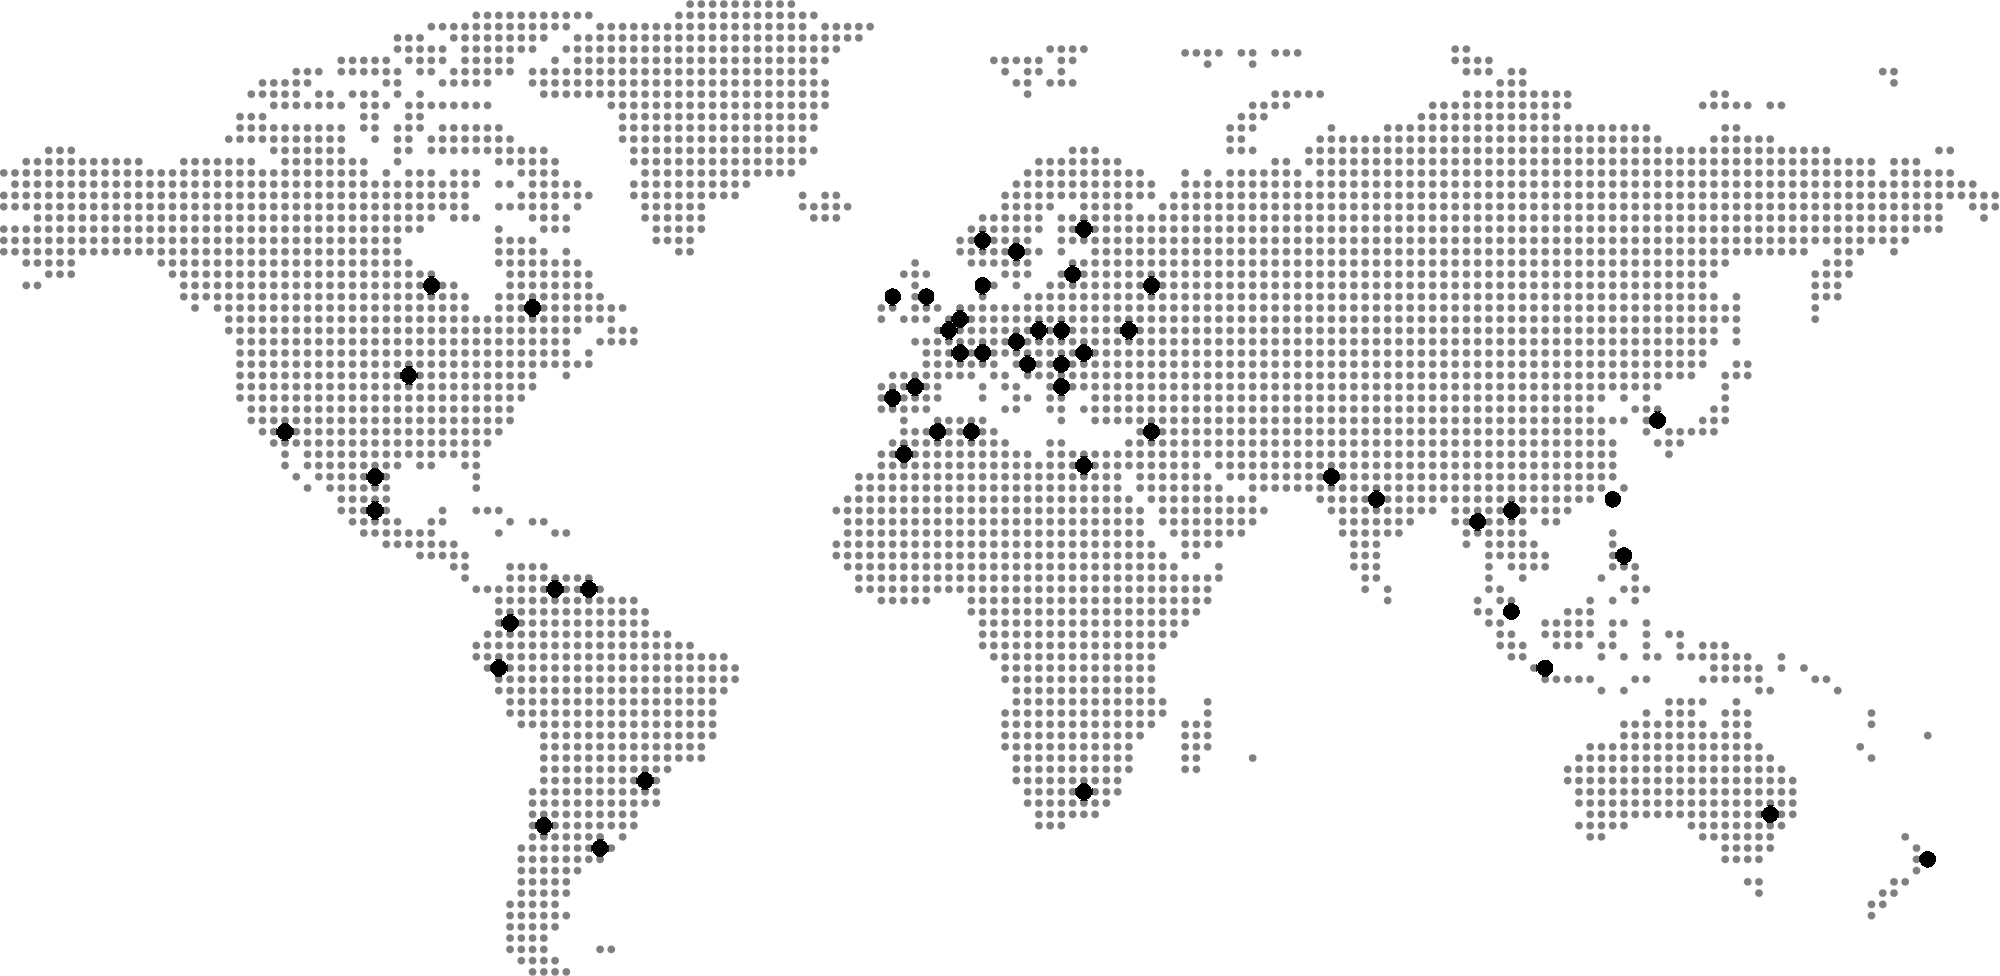 Moretto World Map